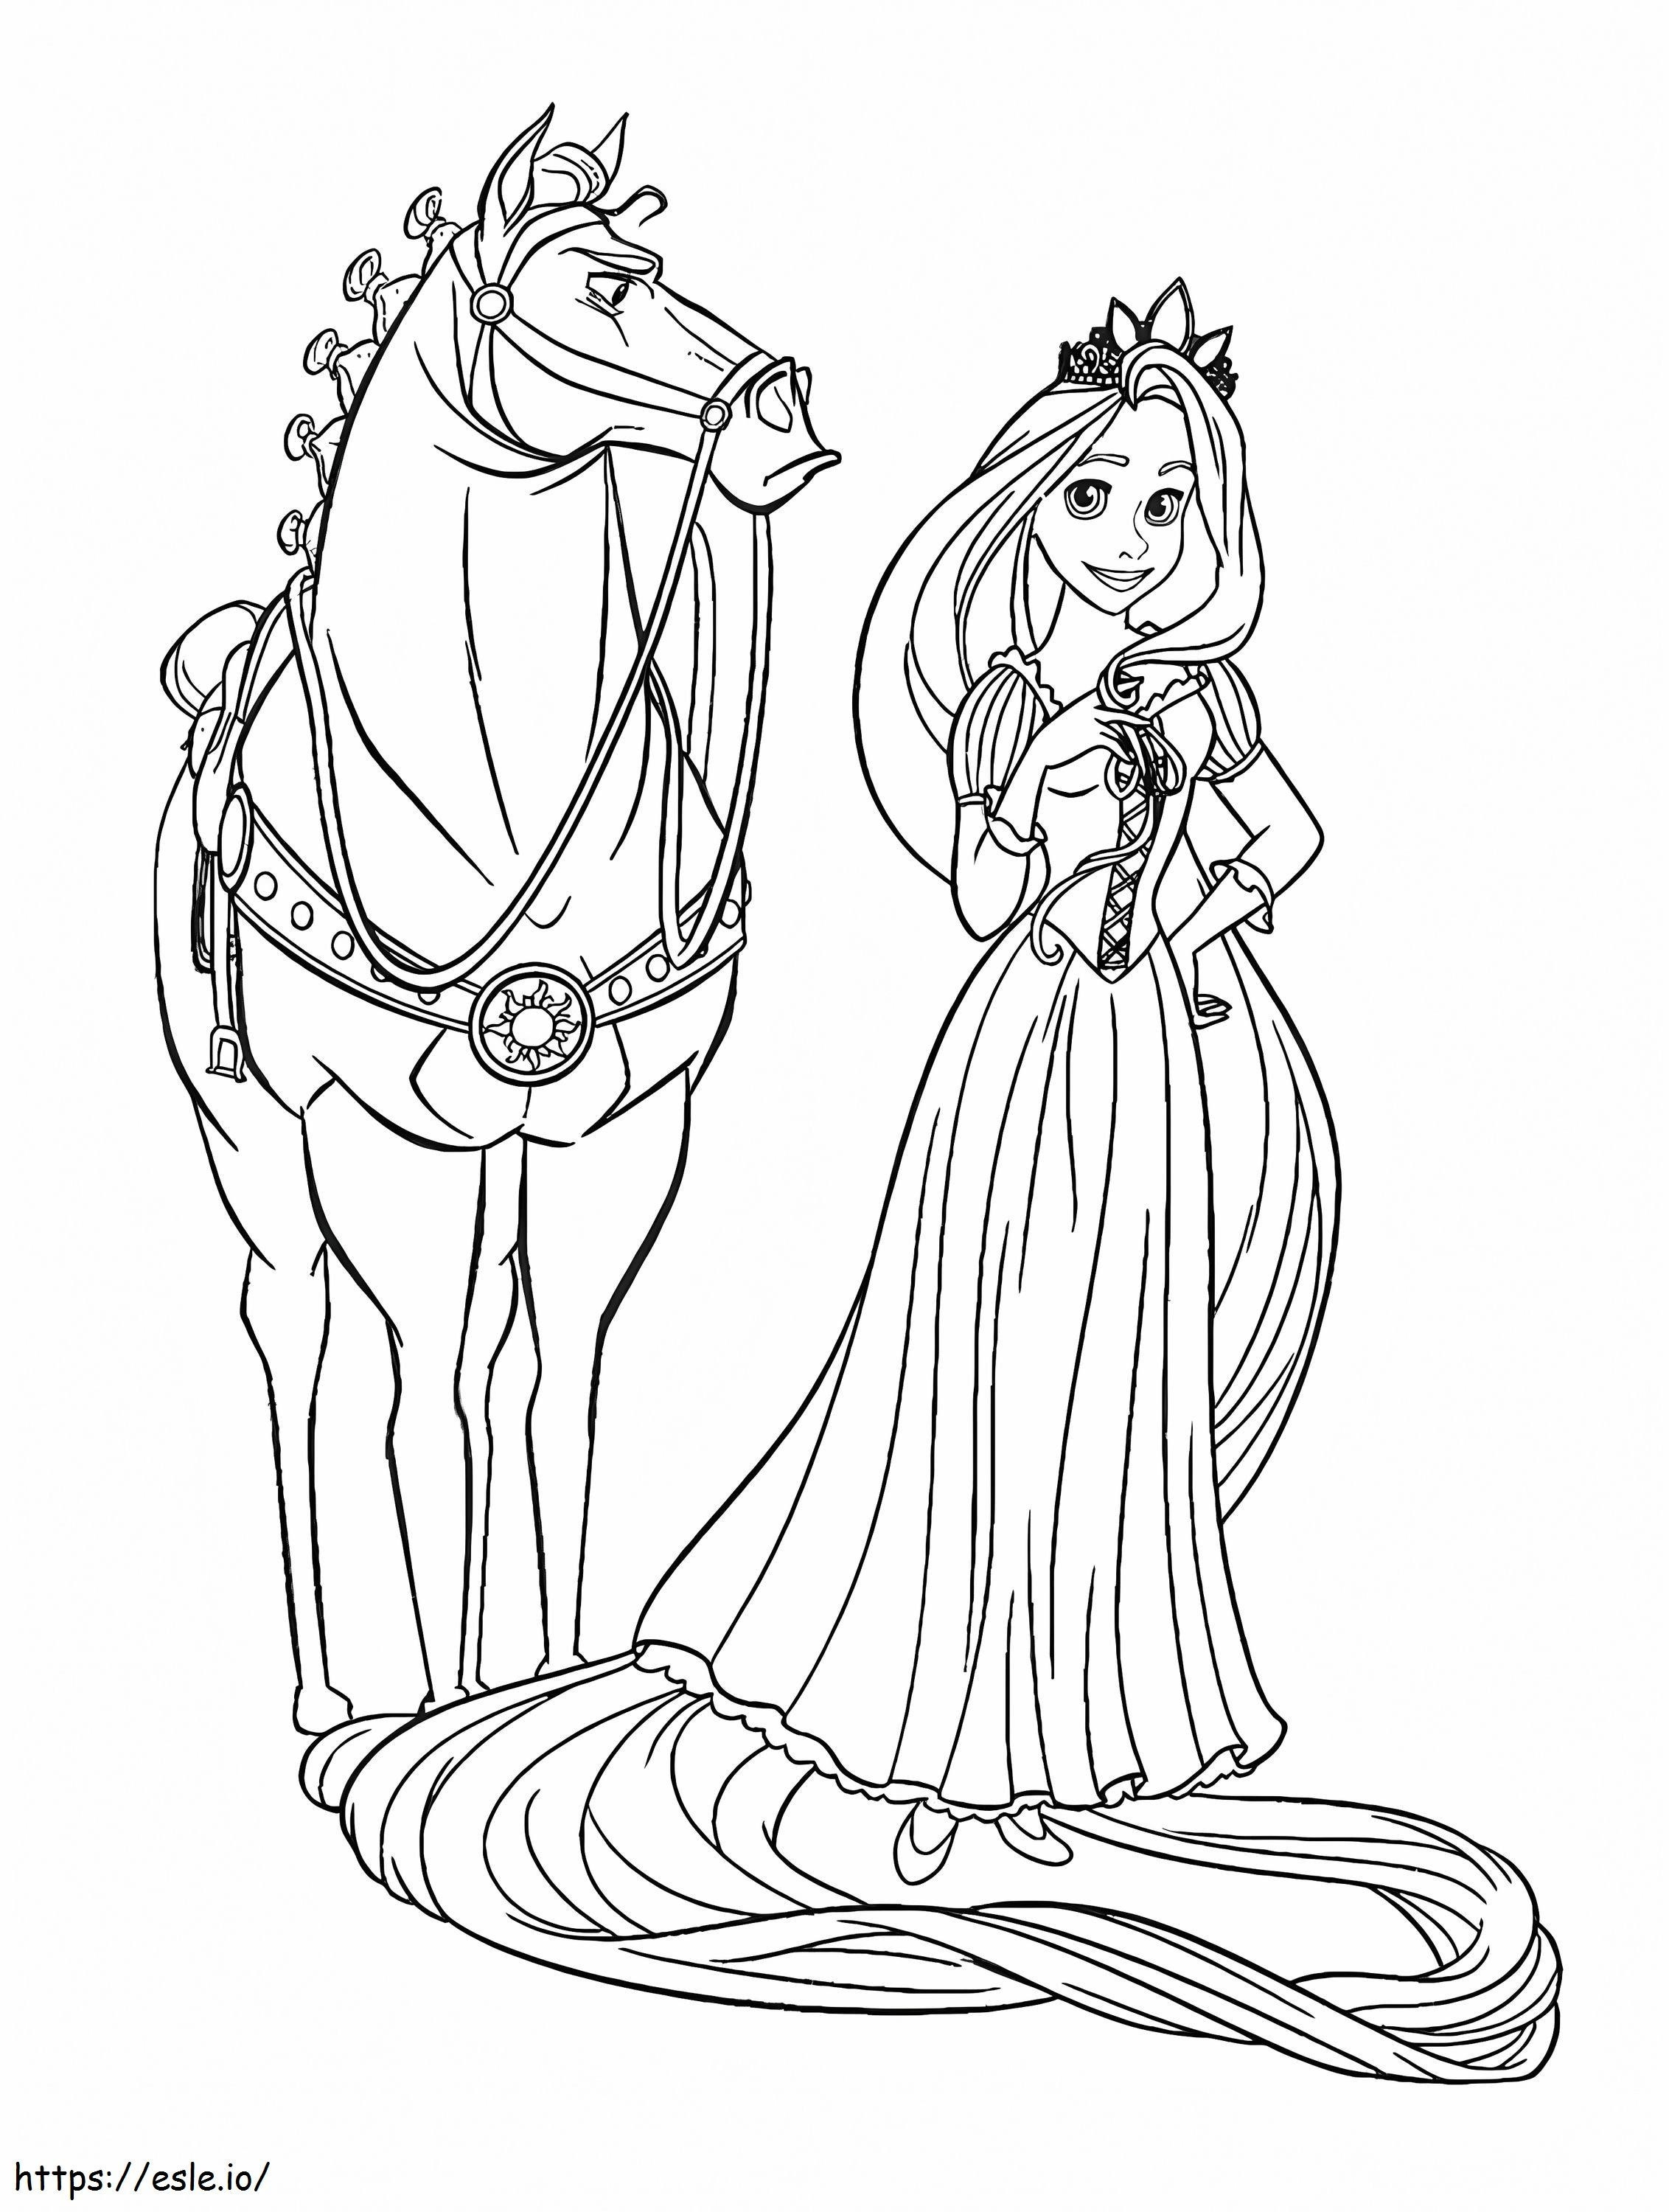 La principessa Rapunzel e il cavallo da colorare